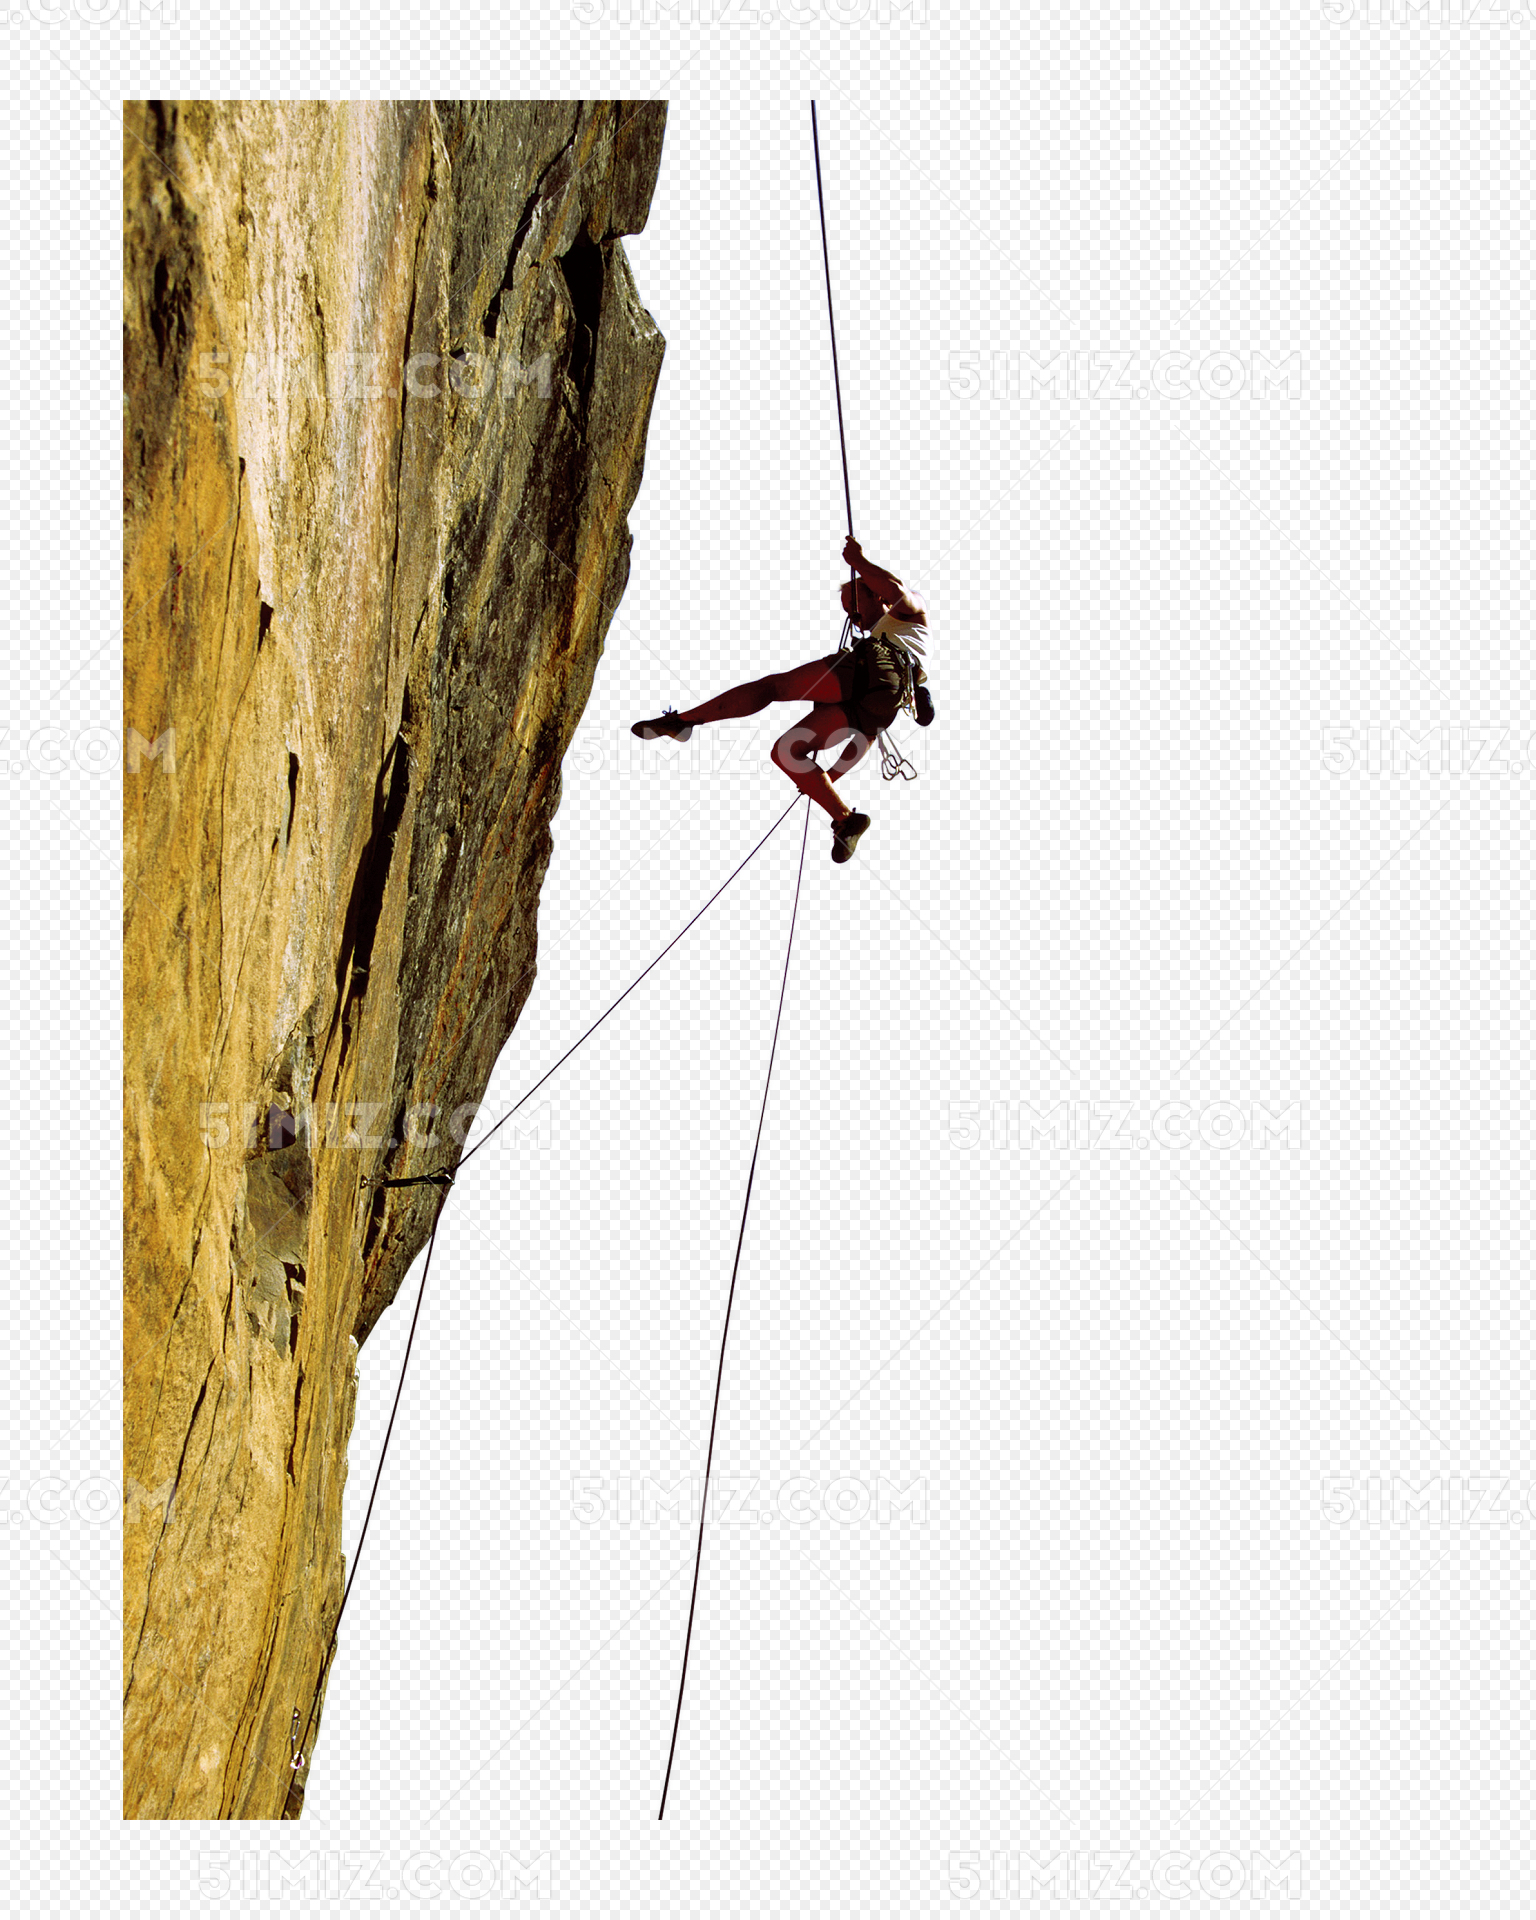 攀岩运动图片大全-攀岩运动高清图片下载-觅知网